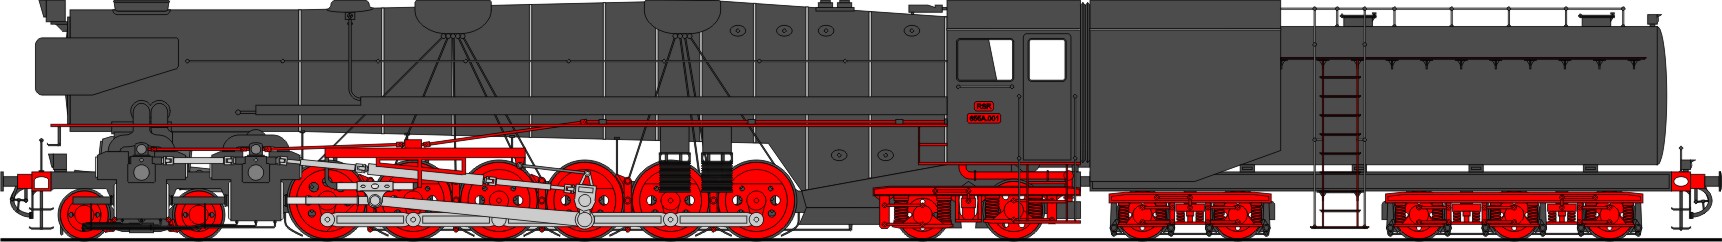 Class 655A 4-12-4 (2003)